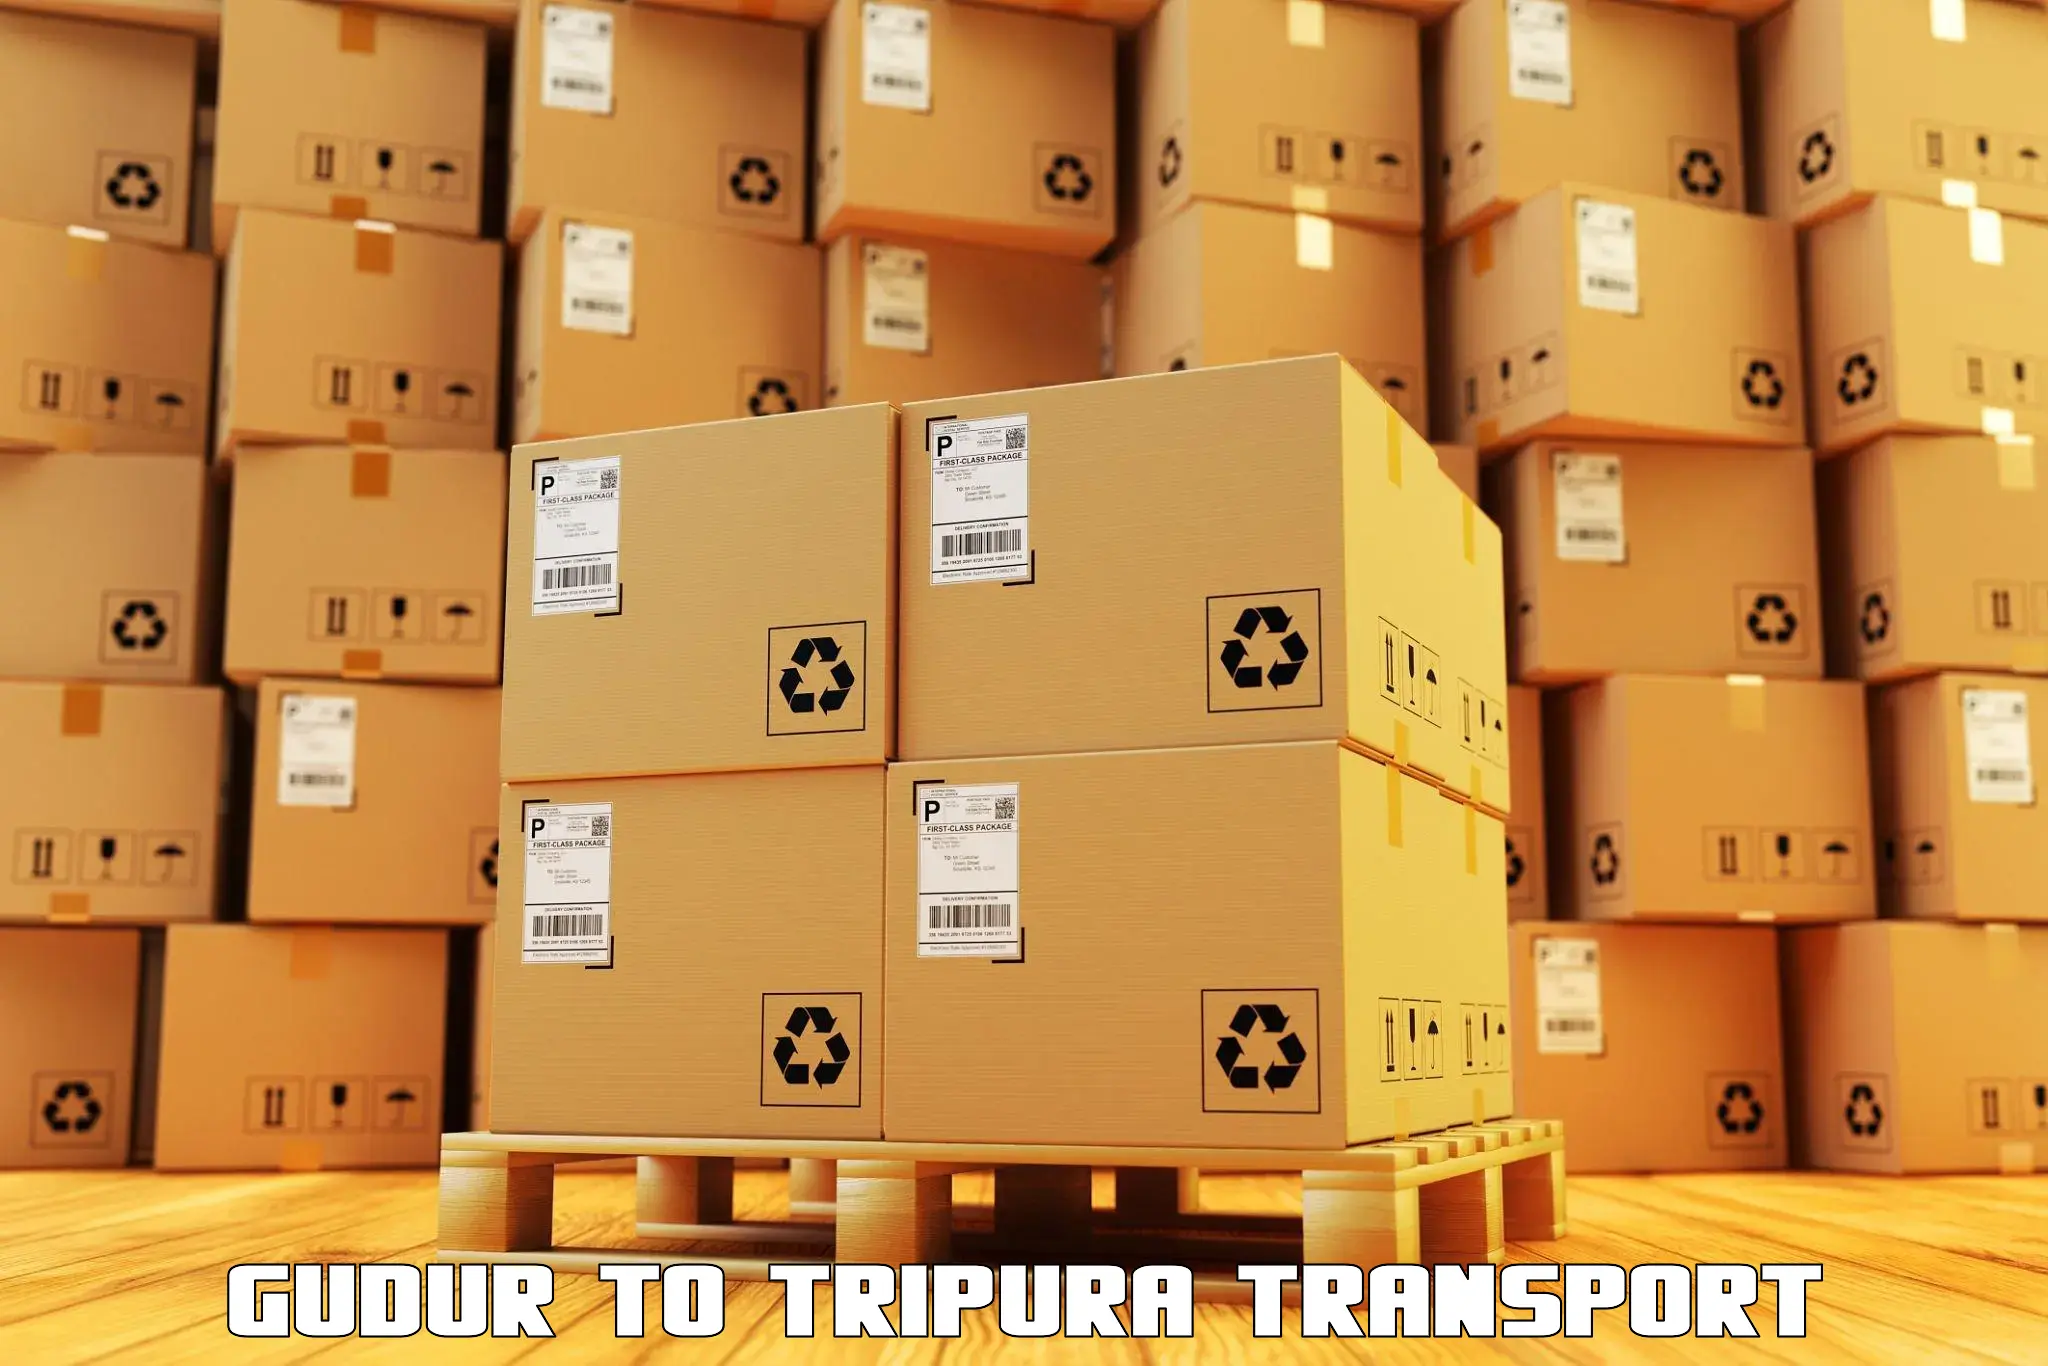 Road transport online services Gudur to Manughat